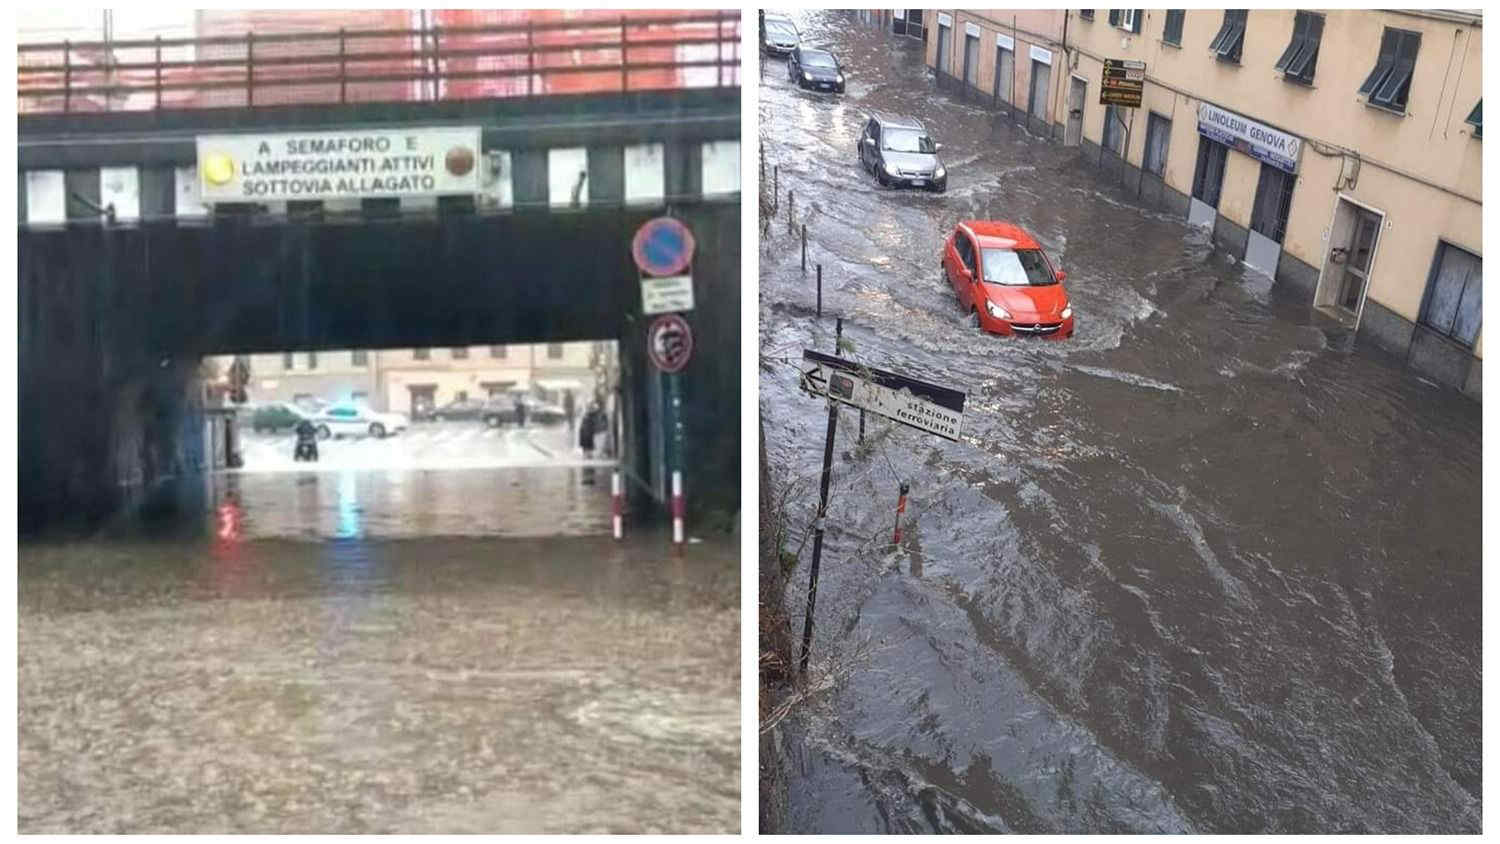 Meteo, maltempo con forti piogge in Liguria: problemi a Genova. Foto e Video